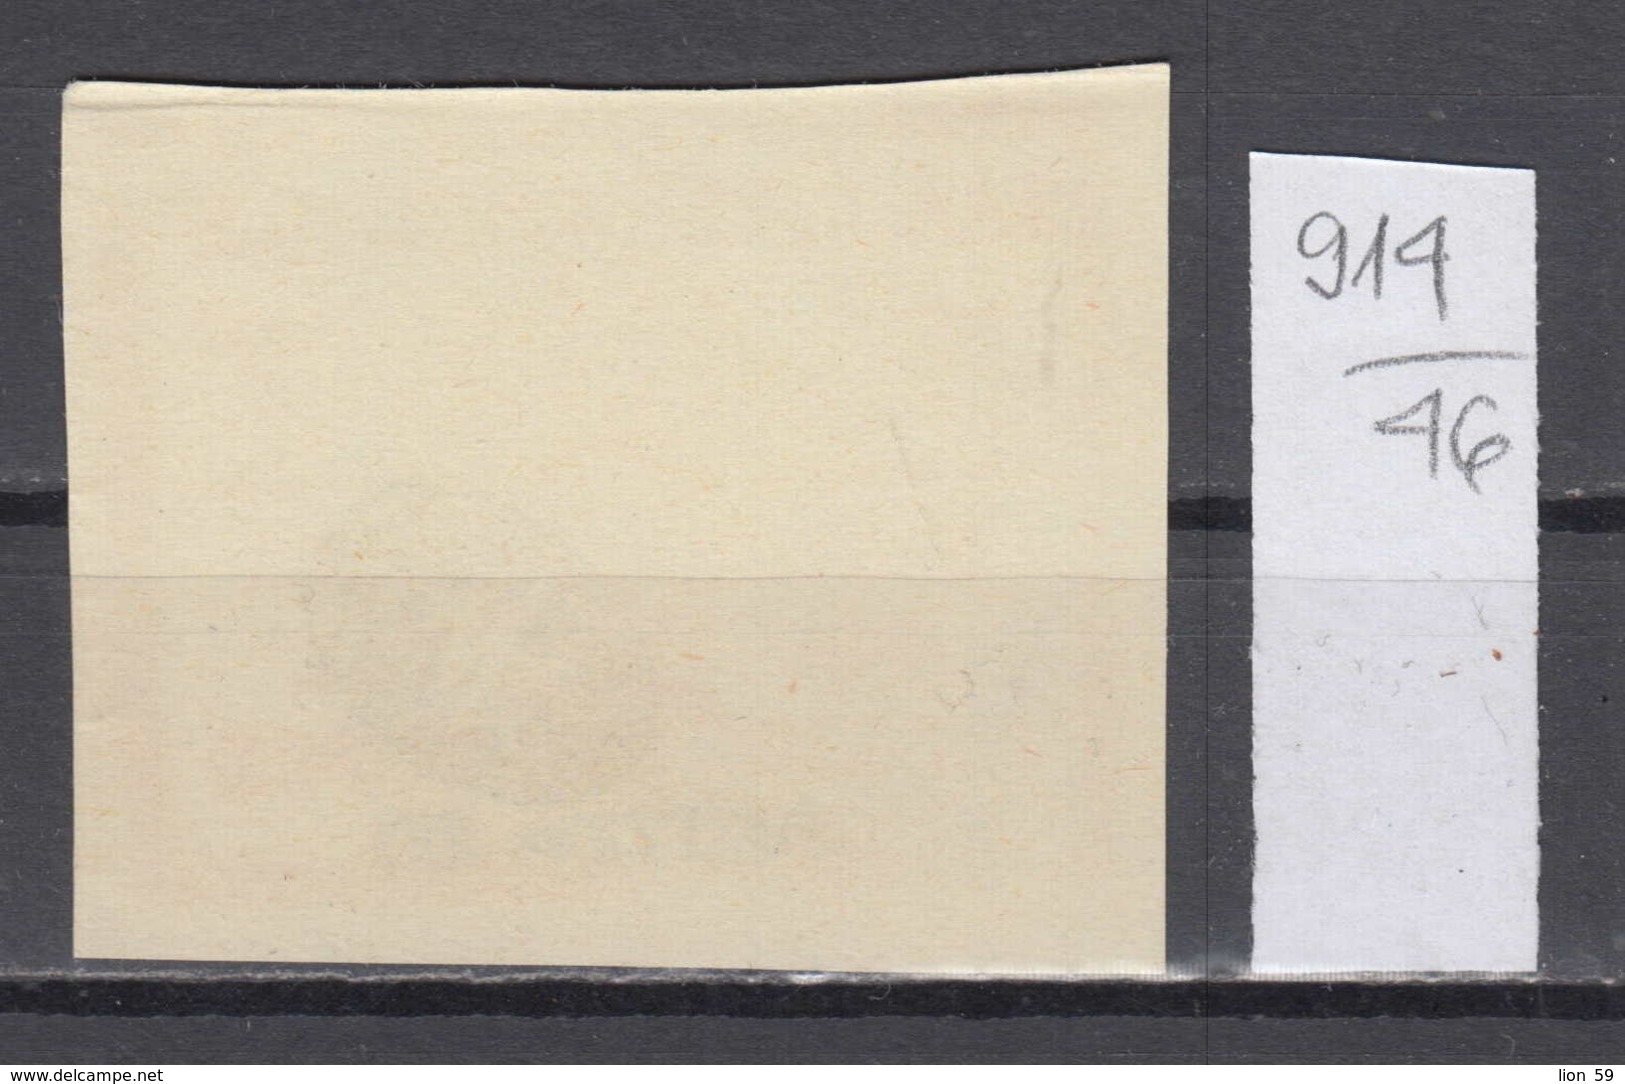 46K914 / 1914 - Michel Nr. 3 - Epirus Chimarra No Certificate, Not Used (* Not Gum ) Greece Grece Griechenland - Epirus & Albanie